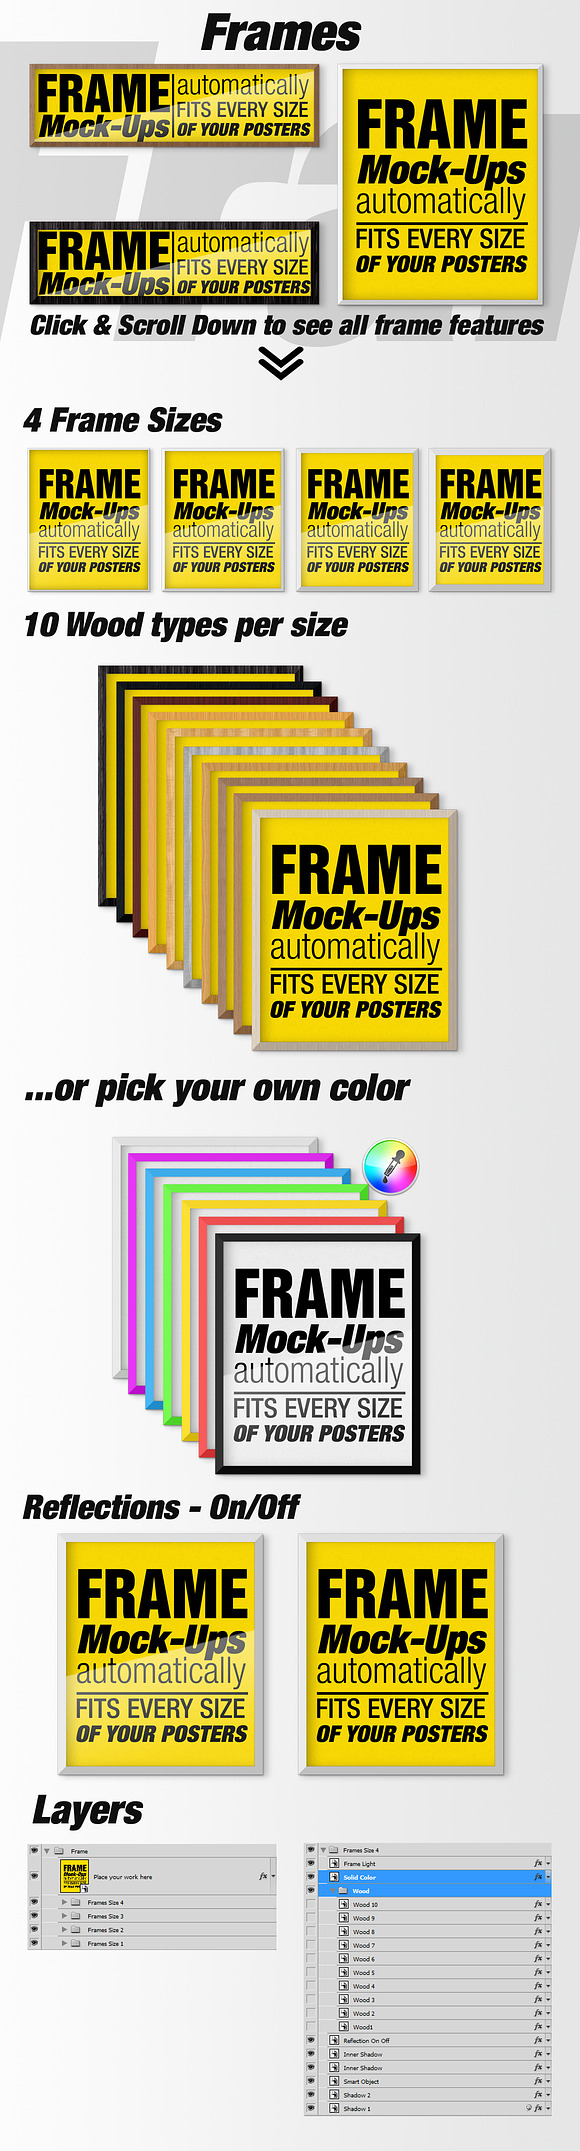 Canvas Mockups - Frames Mockups v 37 in Print Mockups - product preview 6